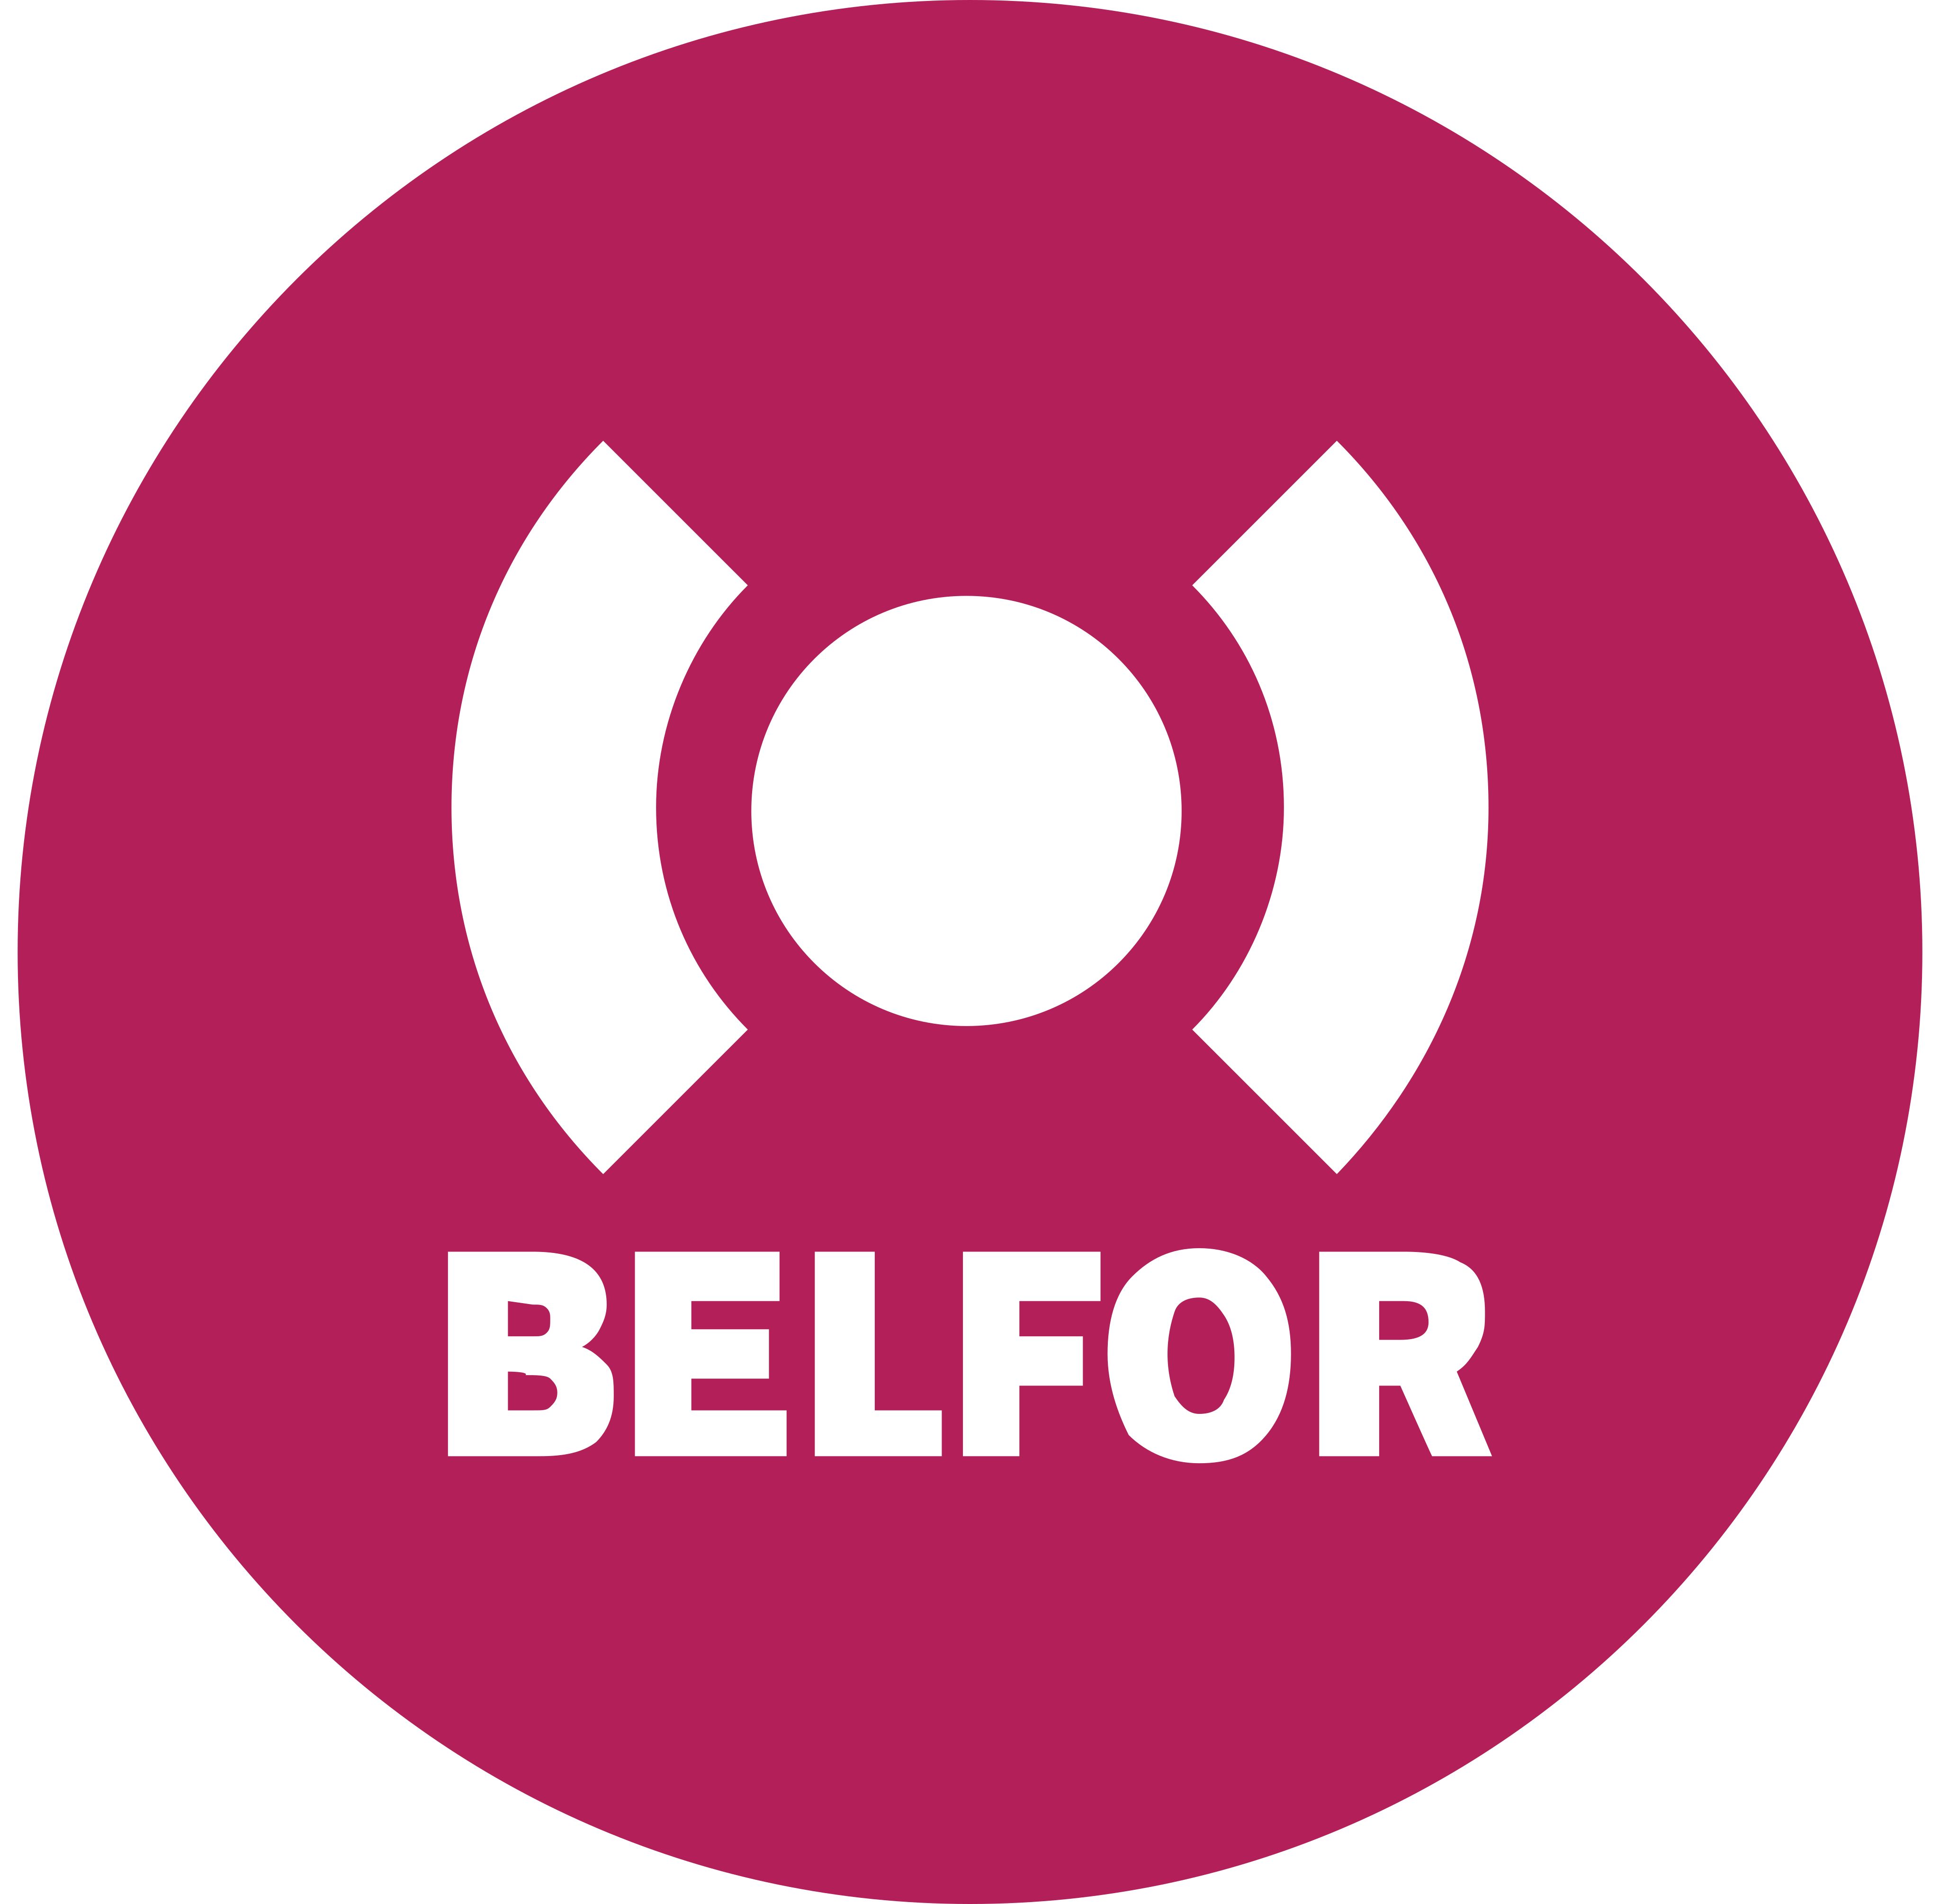 Belfor logo